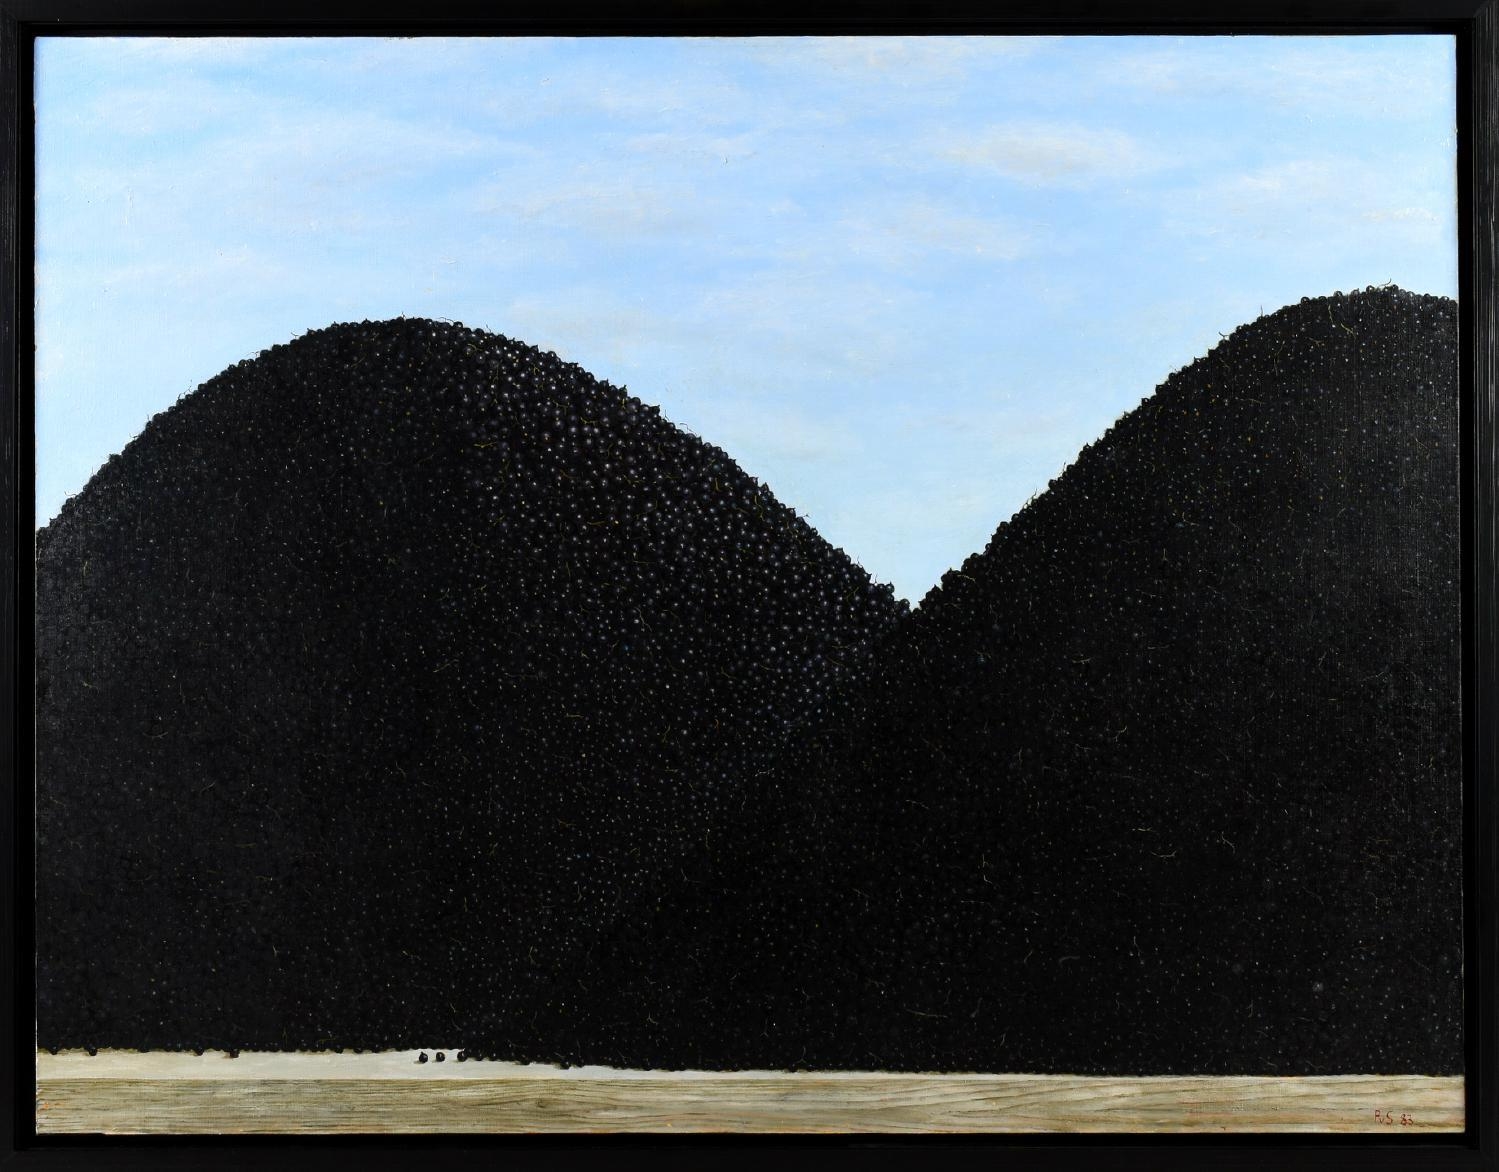 Black currant hills. by Philip von Schantz, 1983